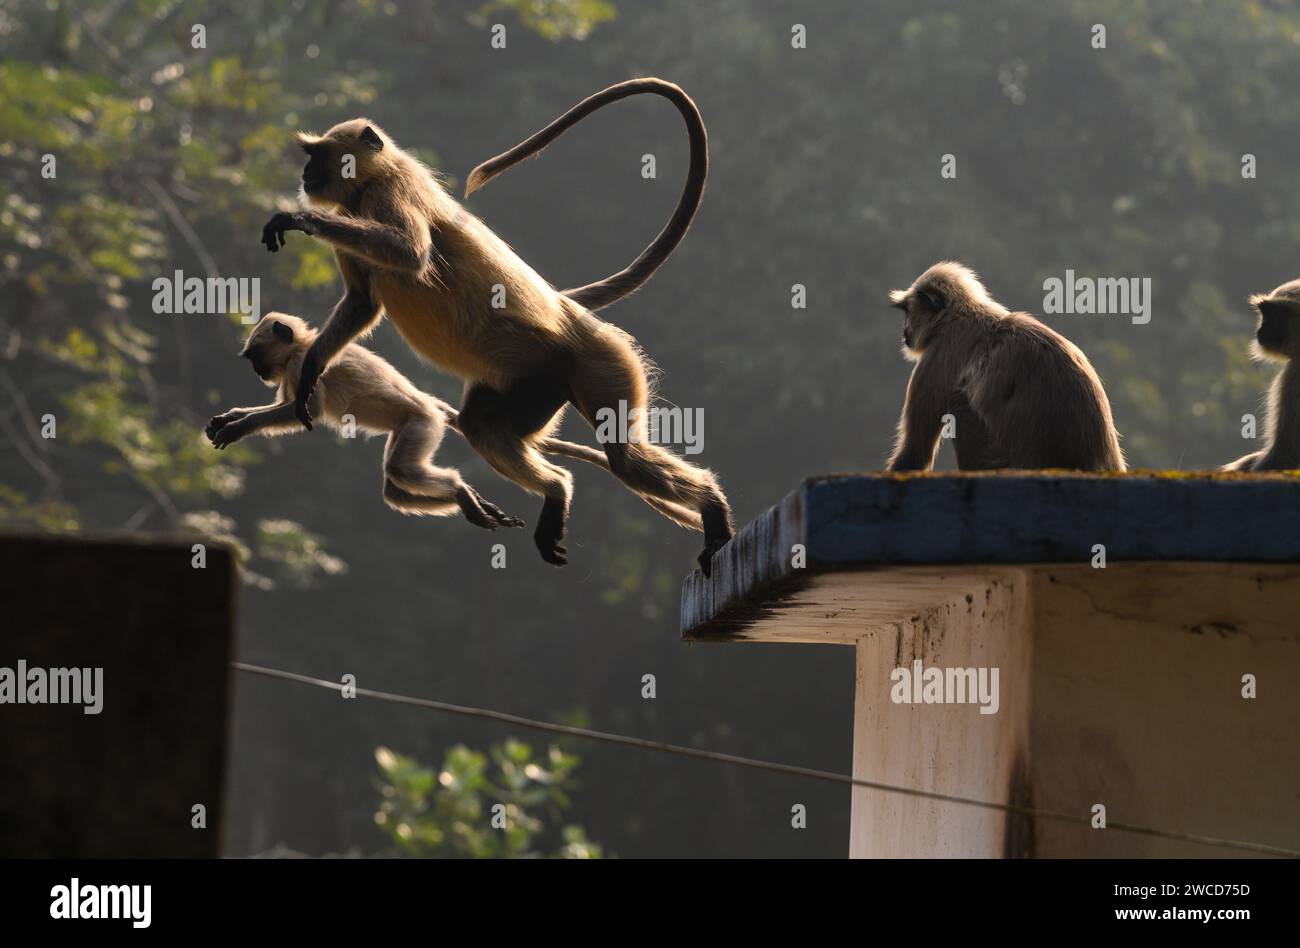 Un gruppo di langur hanuman o scimmie hanuman che si prendono il sole sul tetto una mattina presto d'inverno, gli adulti a volte sdraiati, mentre i loro giovani stanno facendo vari gesti, alcuni stanno cercando di alzarsi e alzare le braccia o appendersi alle foglie di un albero, alcuni saltano in giro, è come una giornata di scimmie a Tehatta, nel Bengala Occidentale, in India. Foto Stock